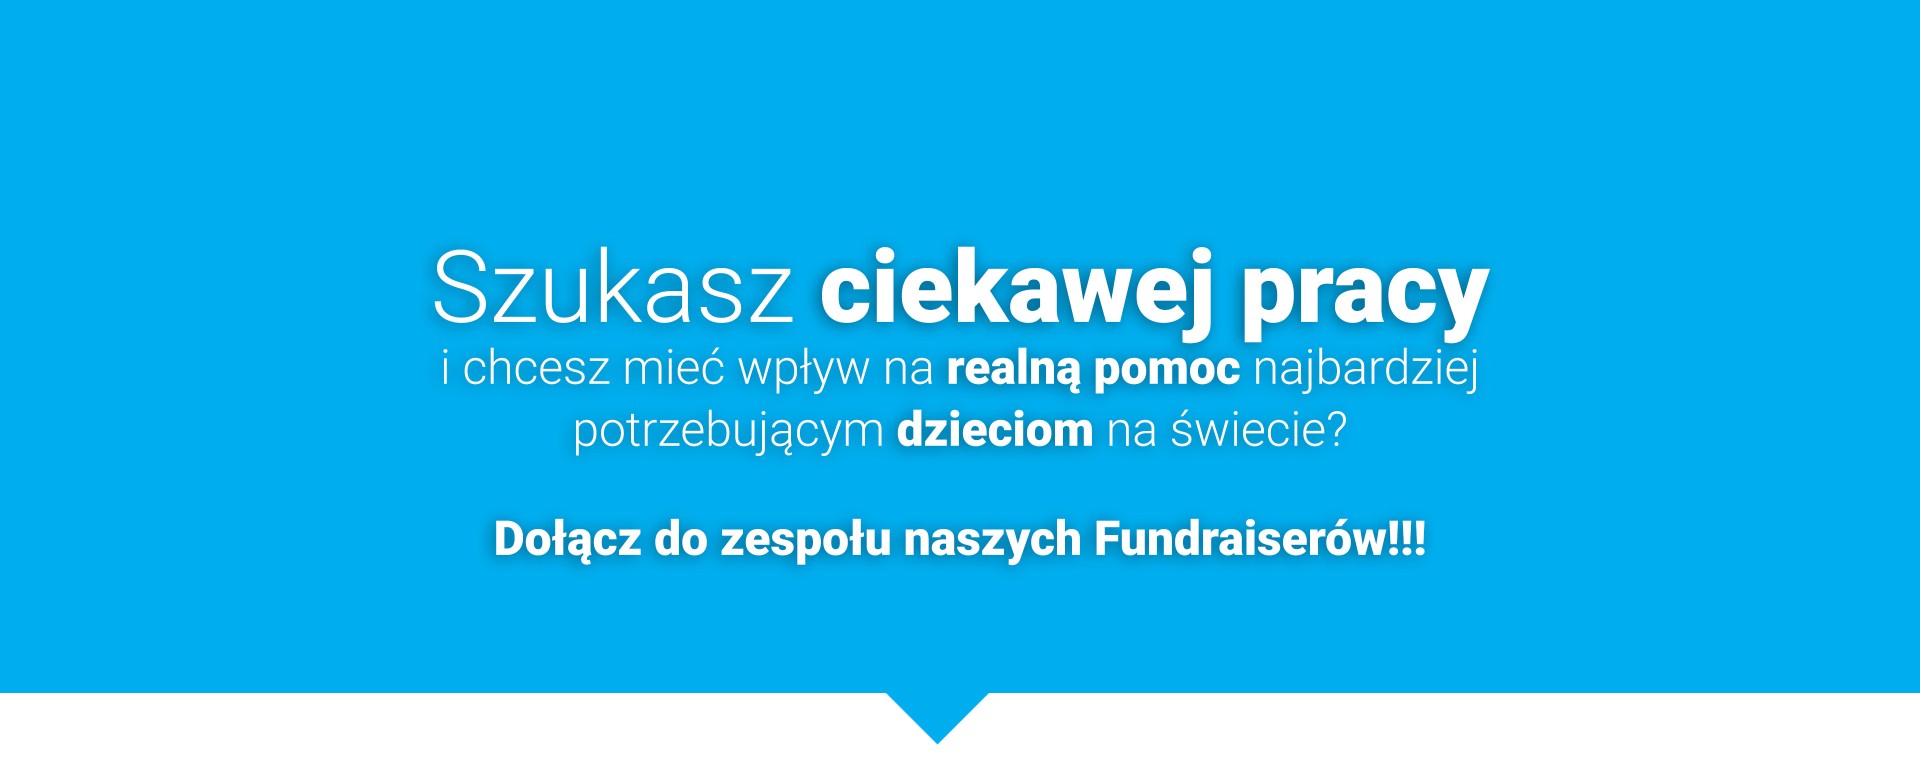 Dołącz do zespołu Fundraiserów UNICEF Polska!